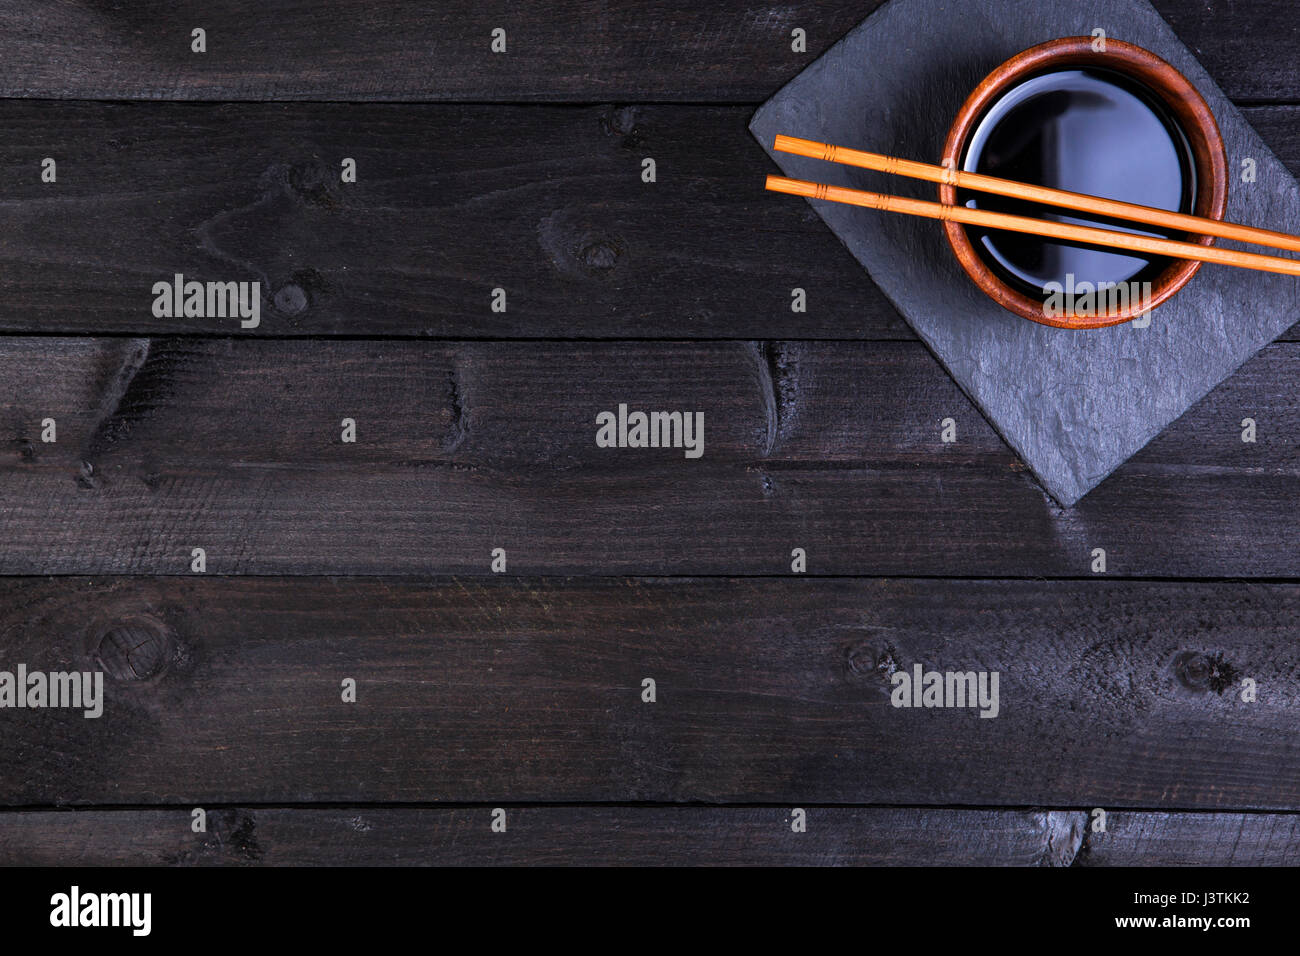 Sushi-Stäbchen und Sojasauce auf schwarzem Hintergrund. Draufsicht mit Textfreiraum. Stockfoto